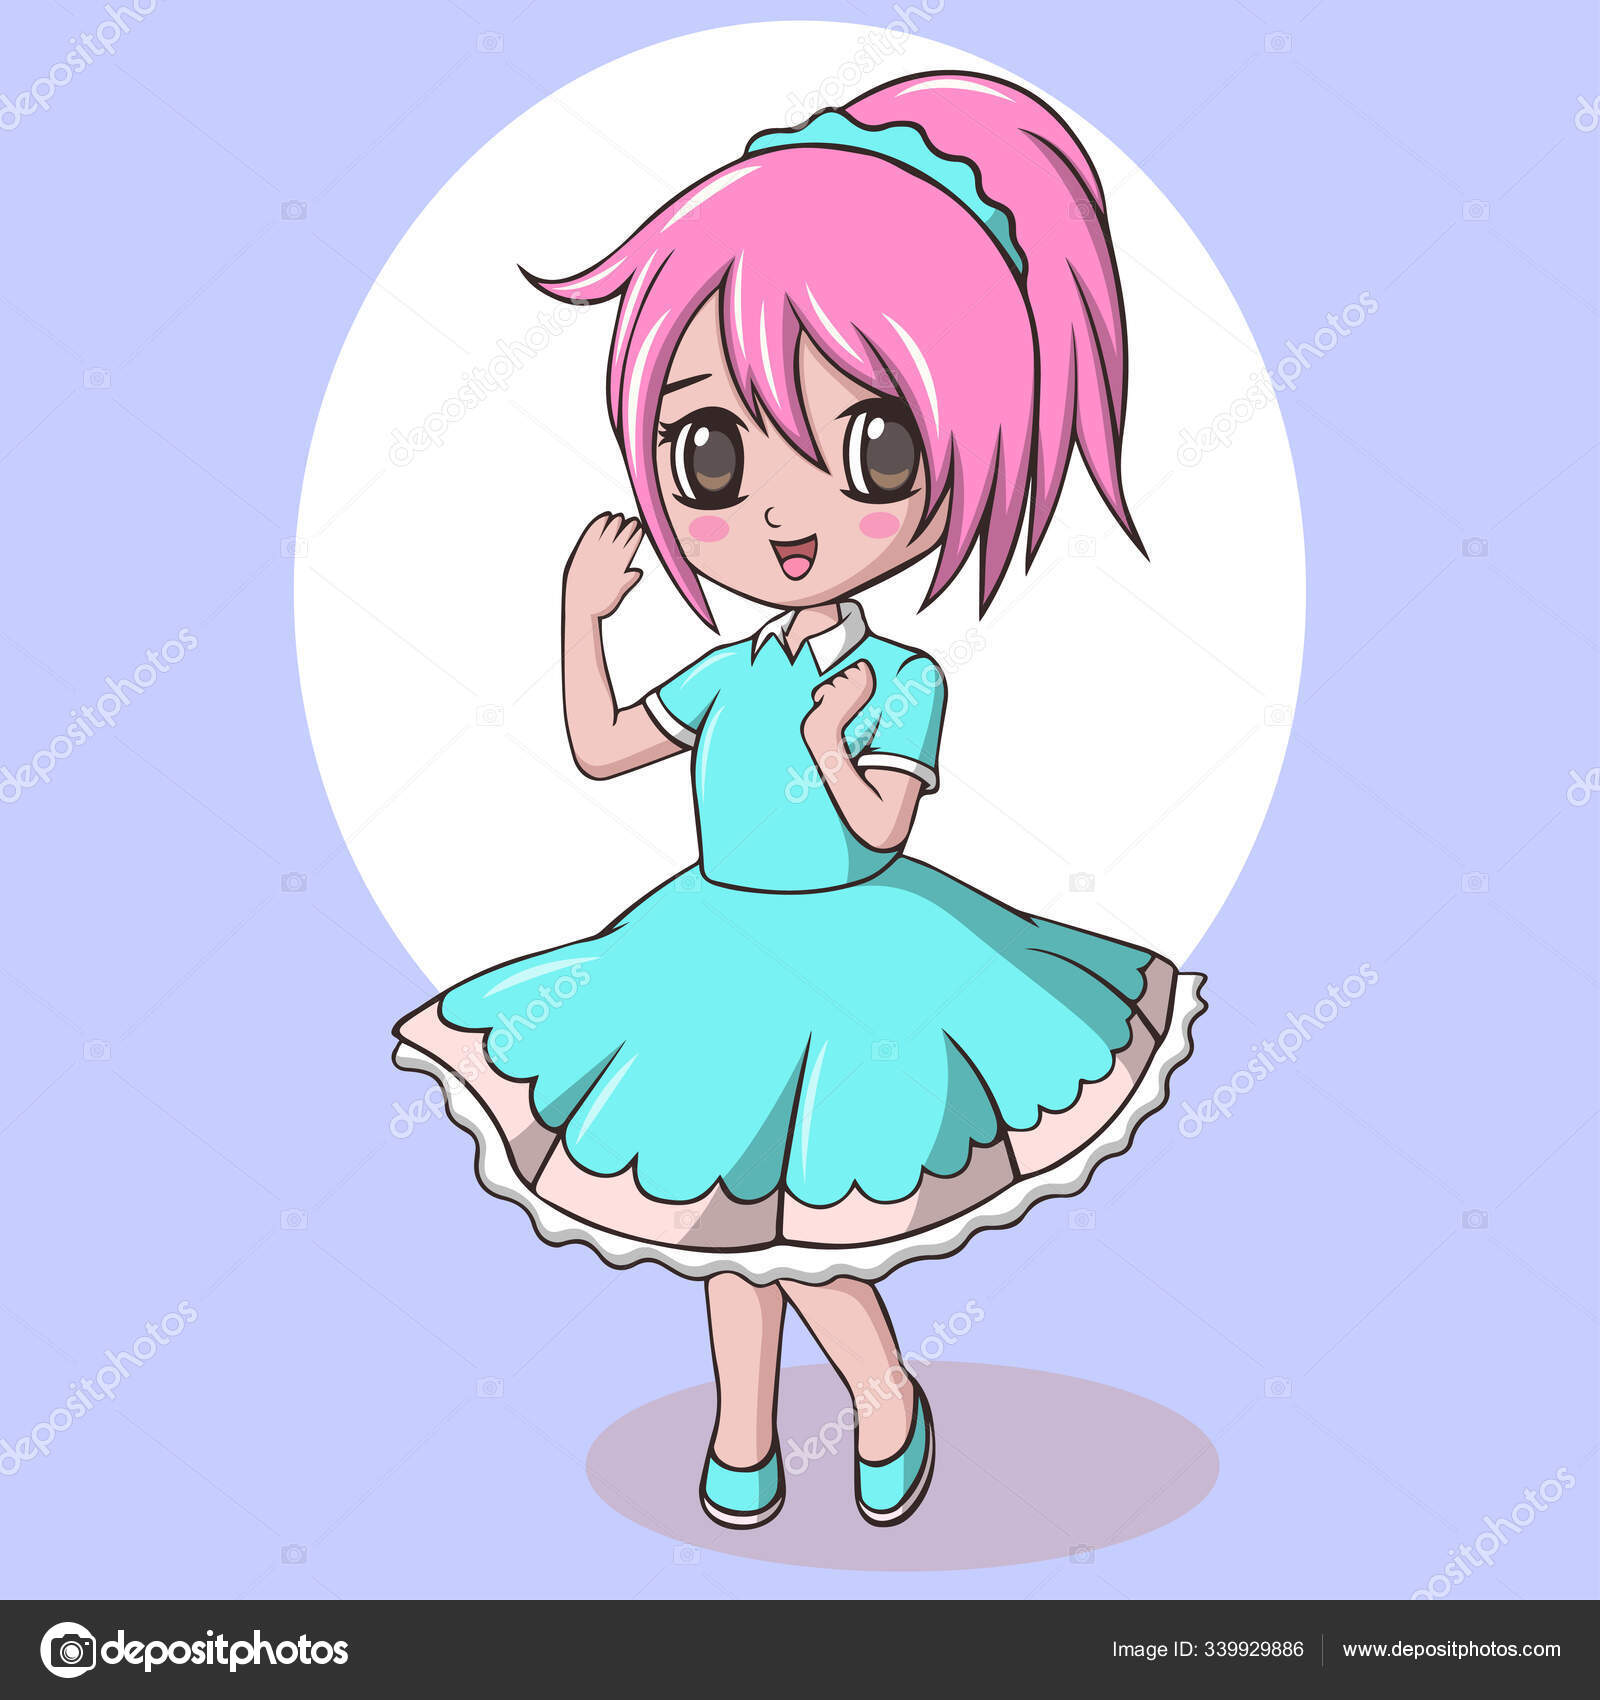 Desenho estilo anime de uma garota com asas de anjo e um vestido